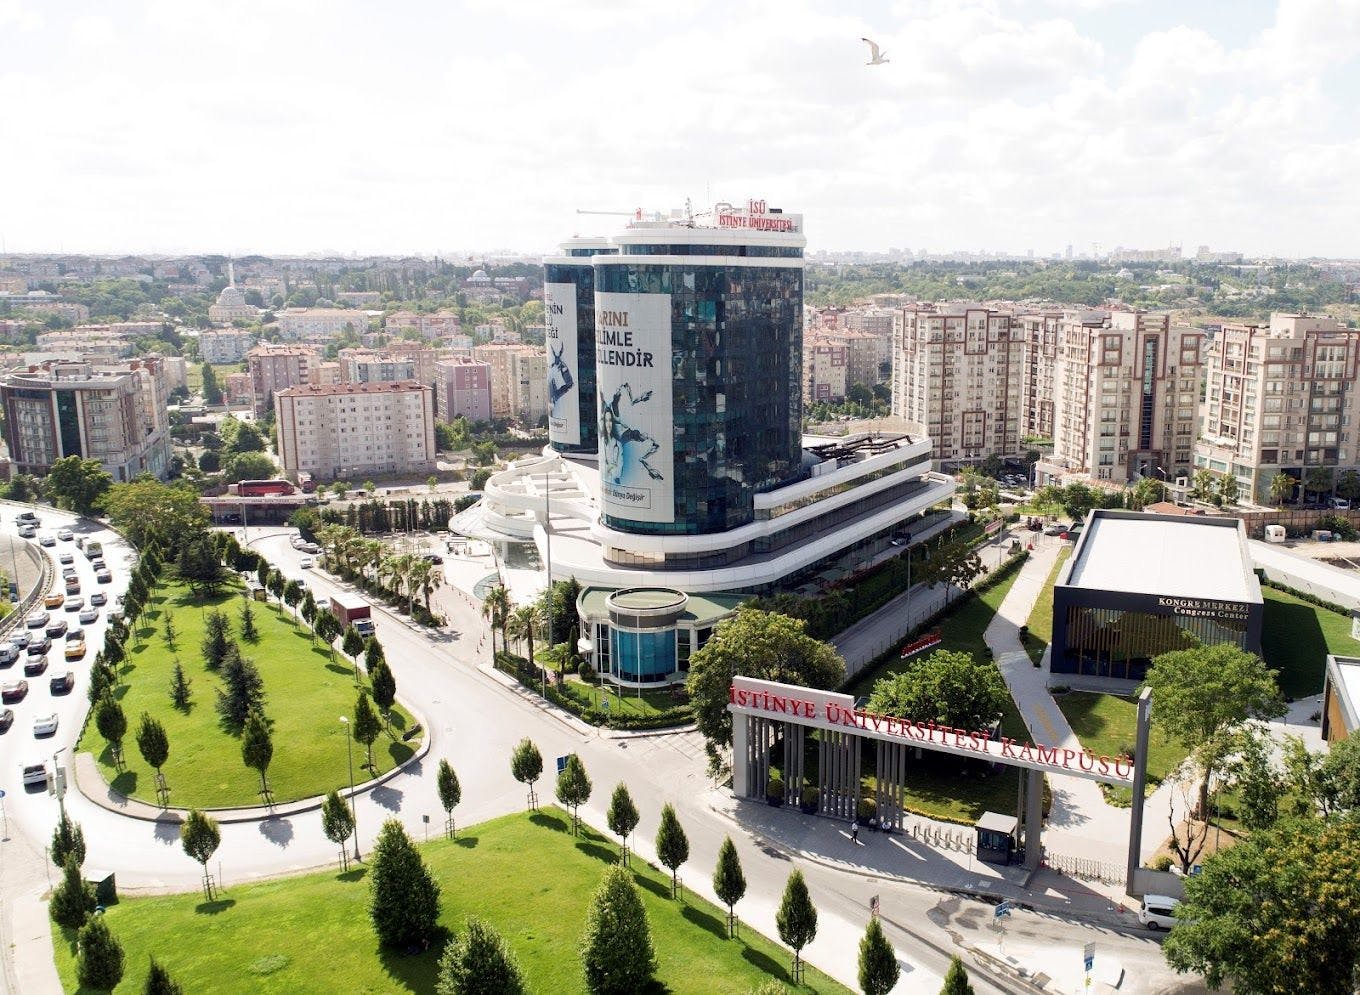 Istinye University Programs - Ranking & Tuition Fees جامعة استينيا في اسطنبول - رسوم التخصصات  - ترتيب الجامعة  